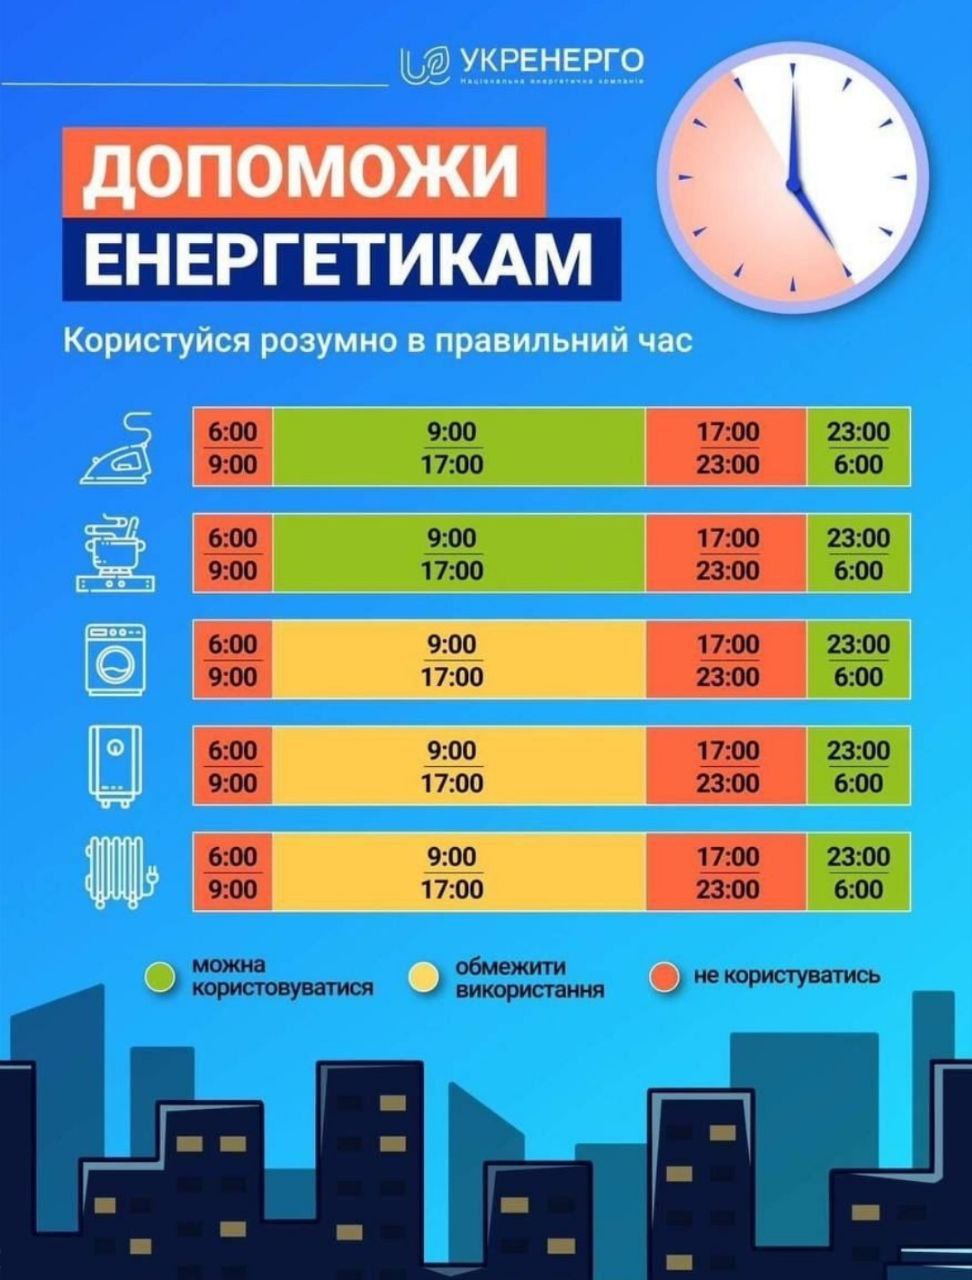 Які електроприлади потрібно вимкнути о 17:00 - інфографіка від Укренерго